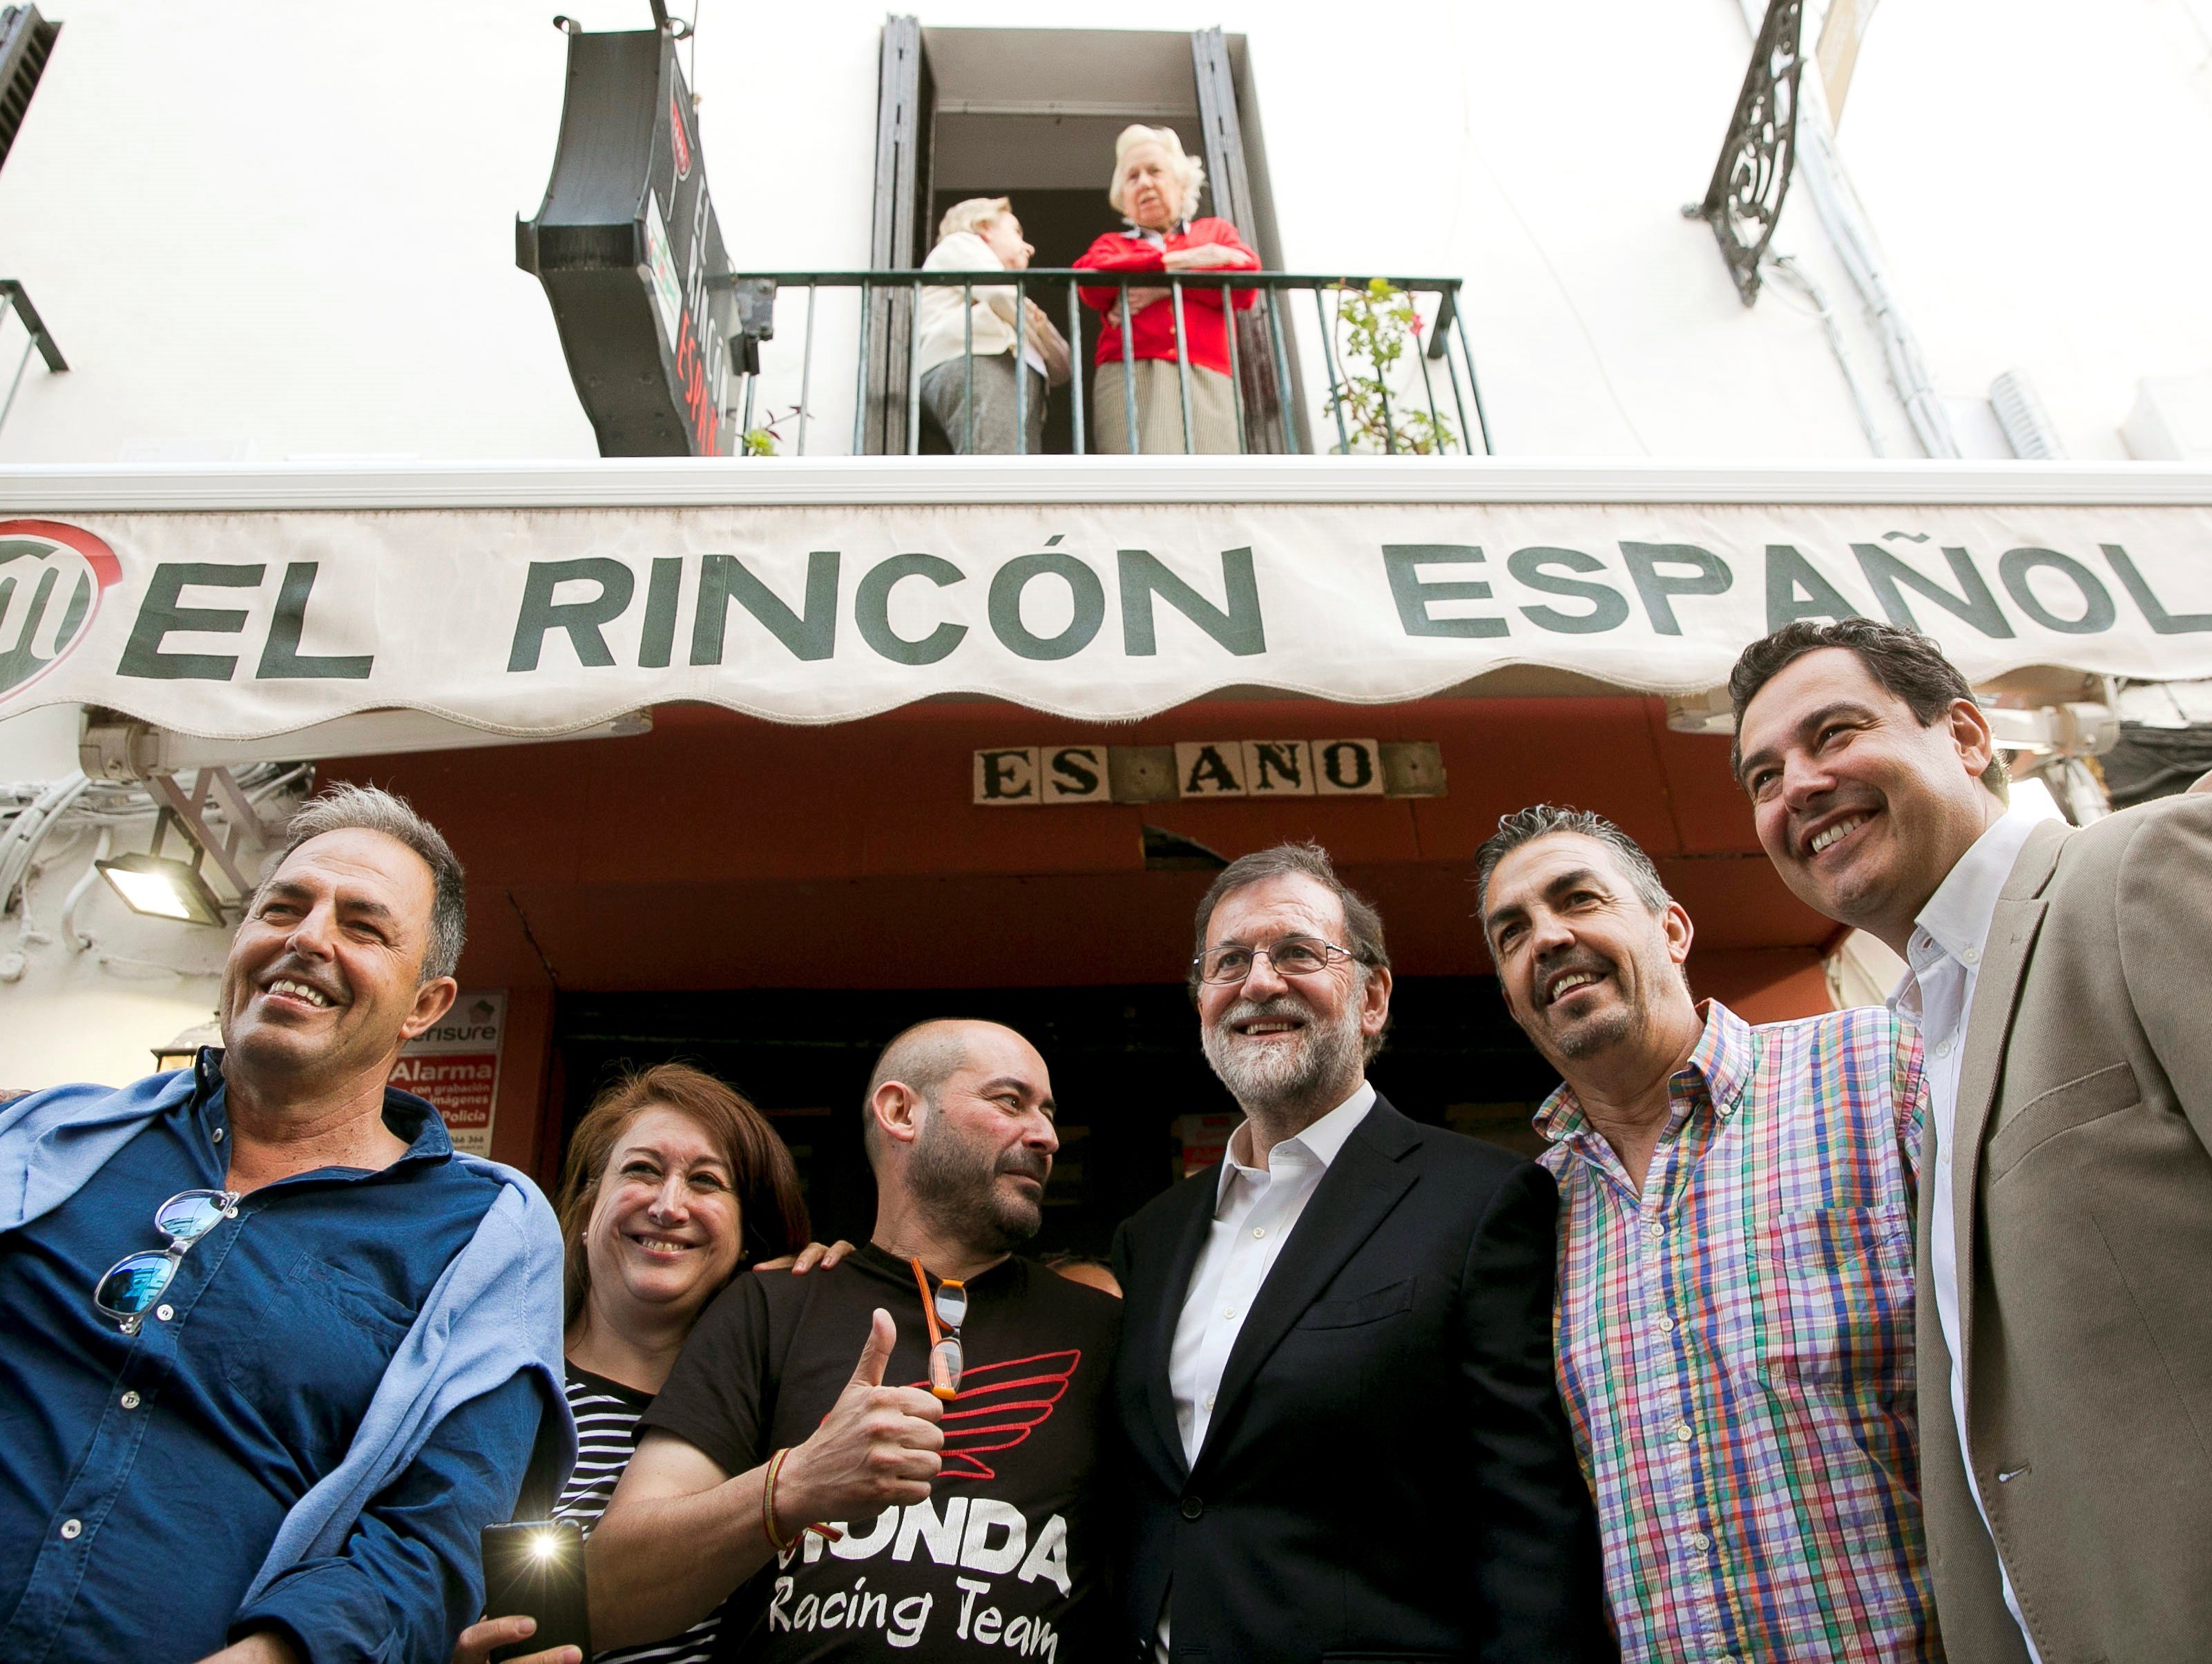 El flirteo con el racismo de Rajoy: "Los hijos de 'buena estirpe' superan a los demás"